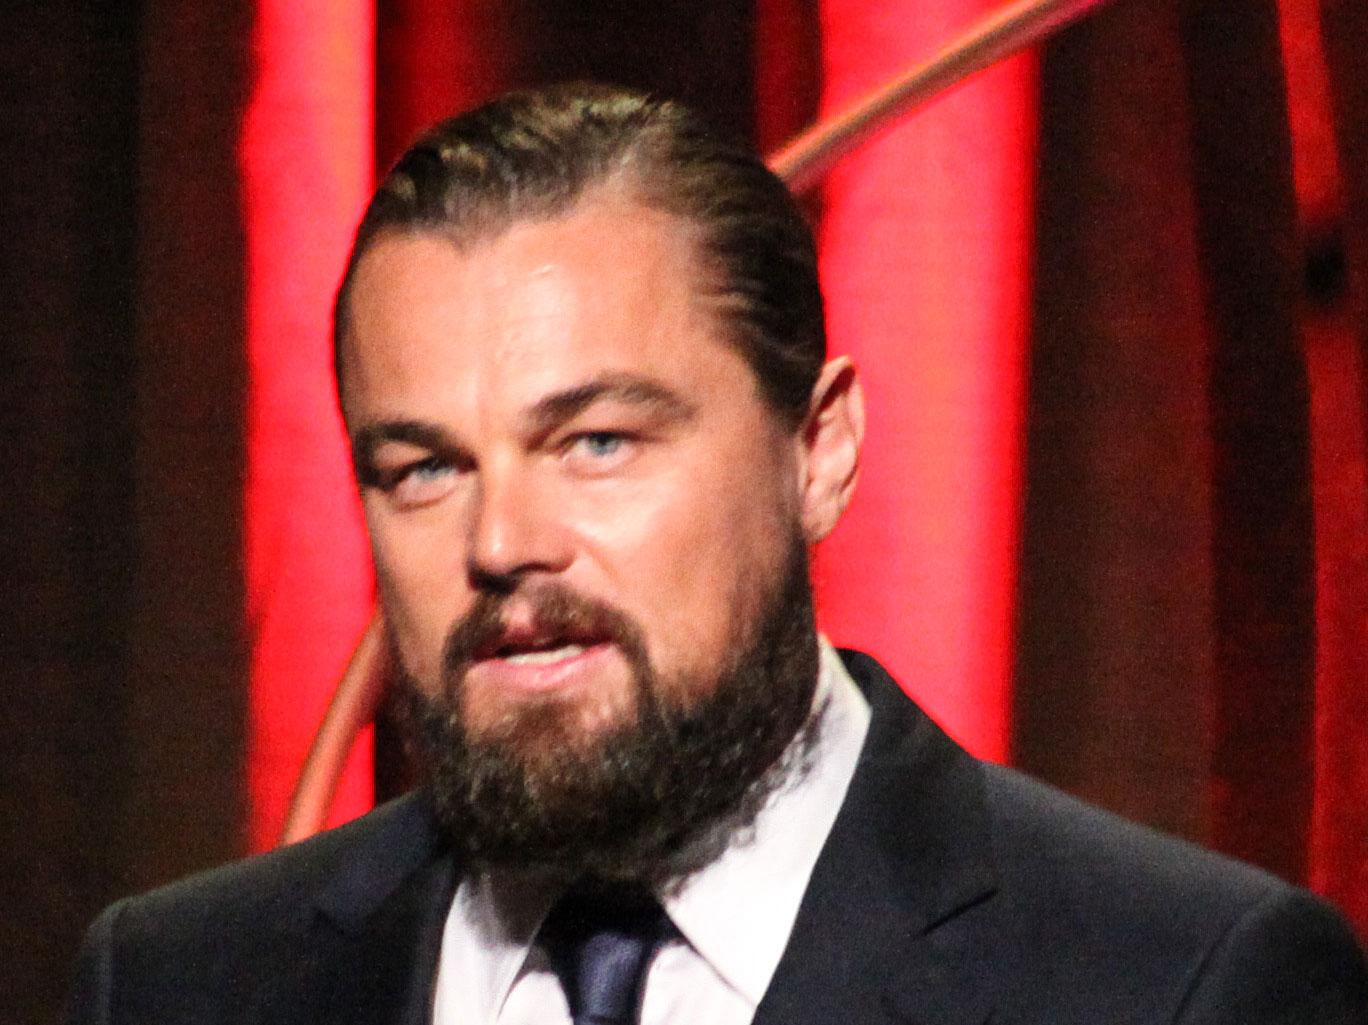 Farbroderskägget Med sin något yviga ansiktsbehåring odlar Leonardo DiCaprio en excentrisk och filantropisk sida